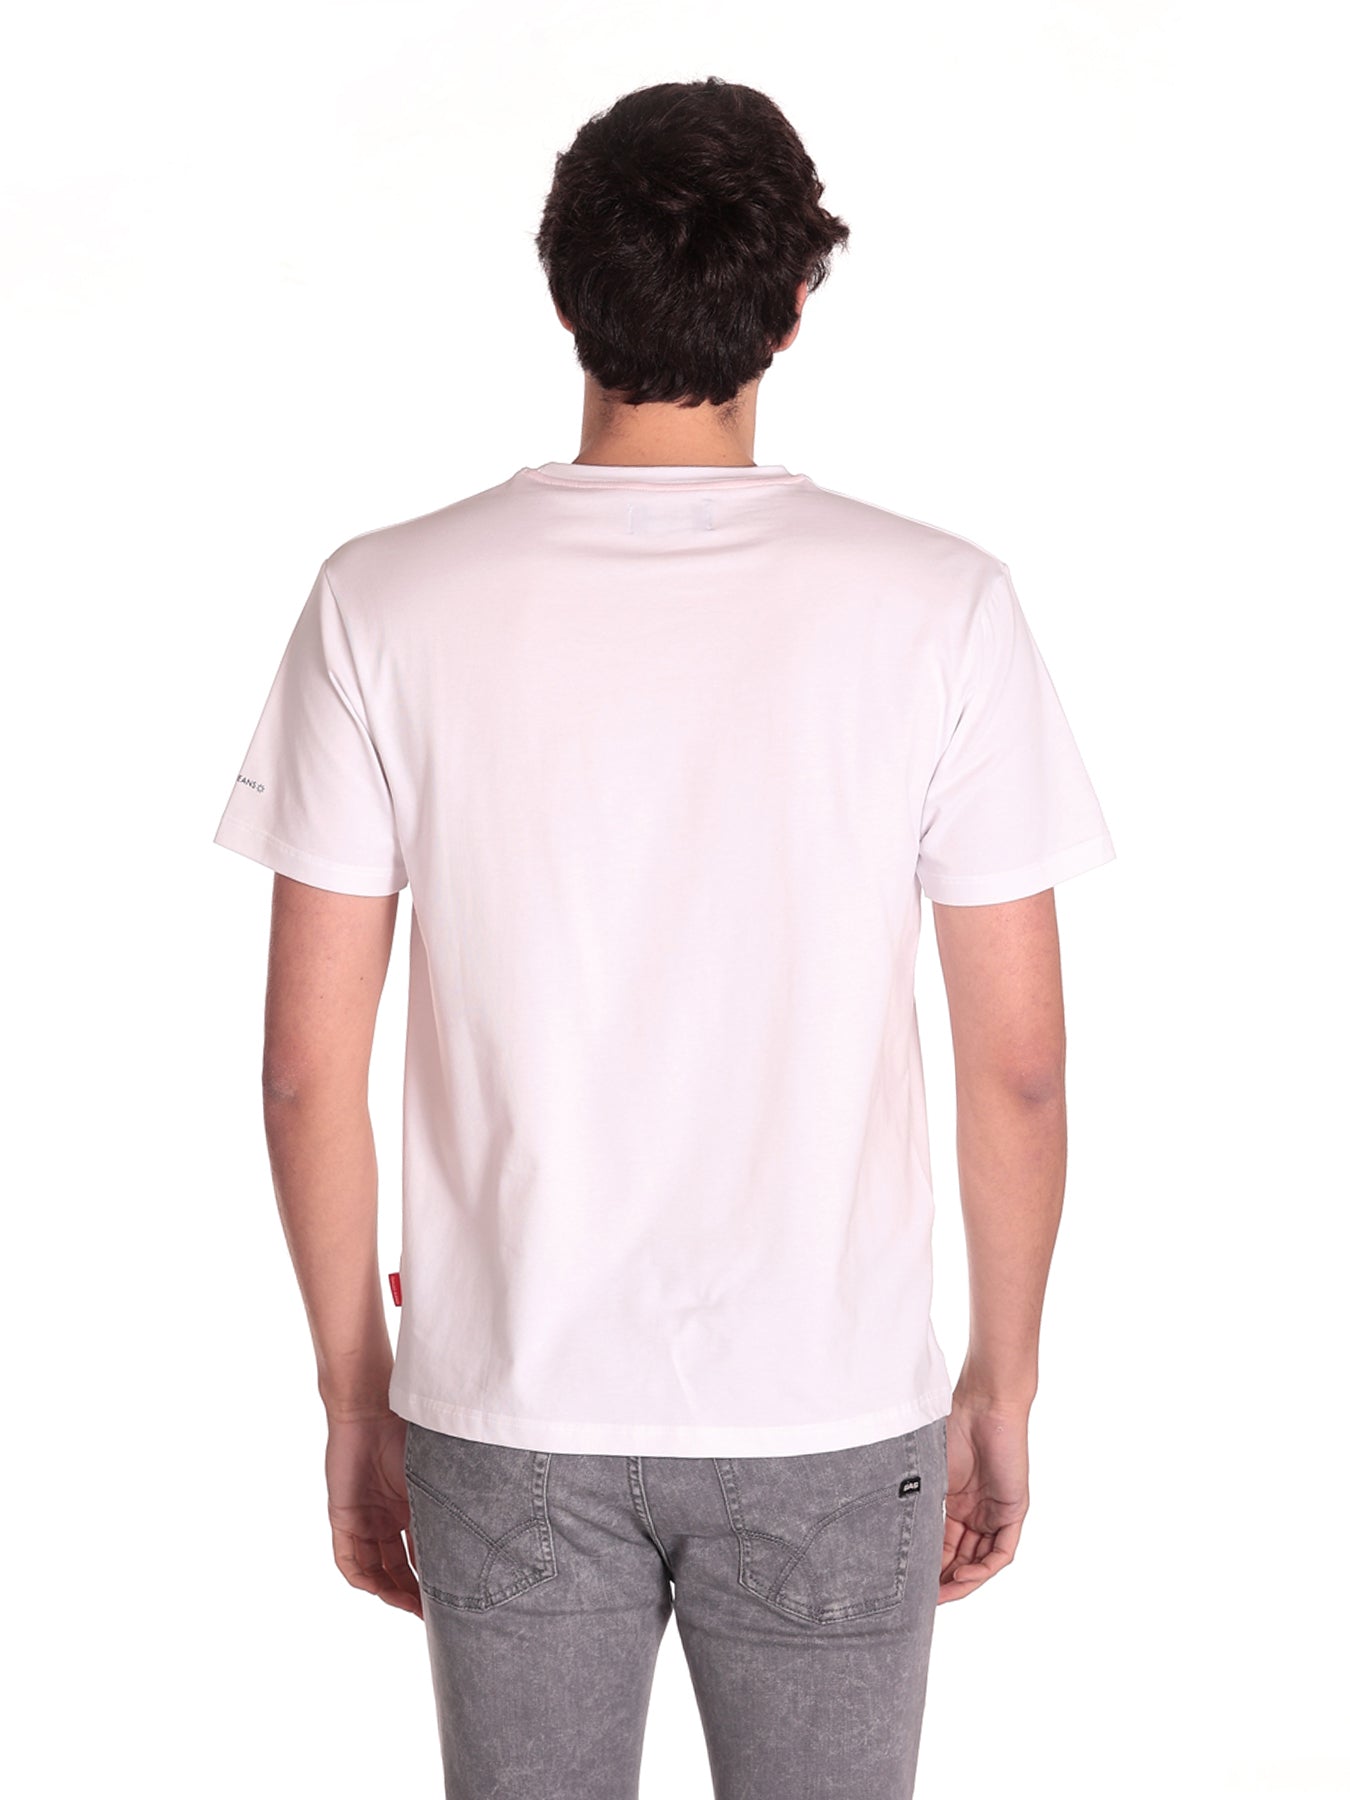 T-Shirt 311gu64118 White